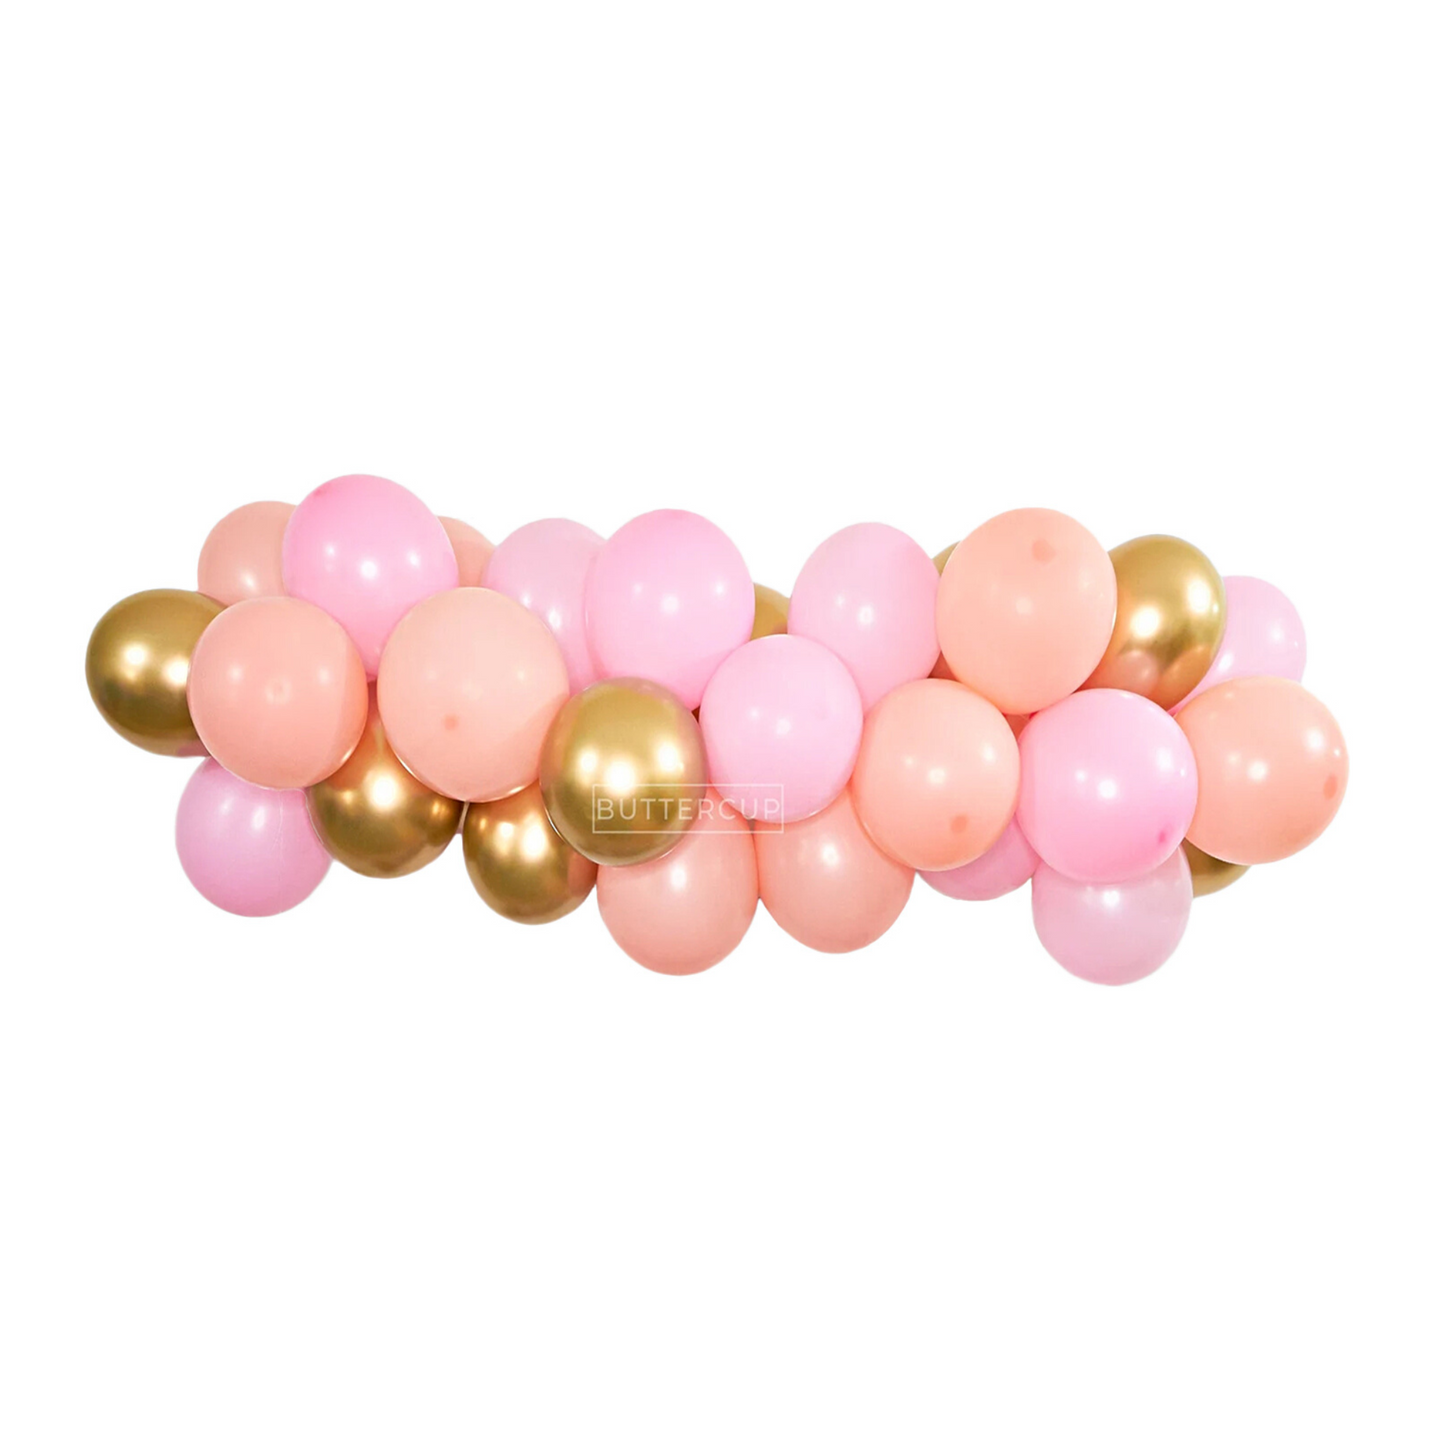 Blush Pink Balloon Garland Kit